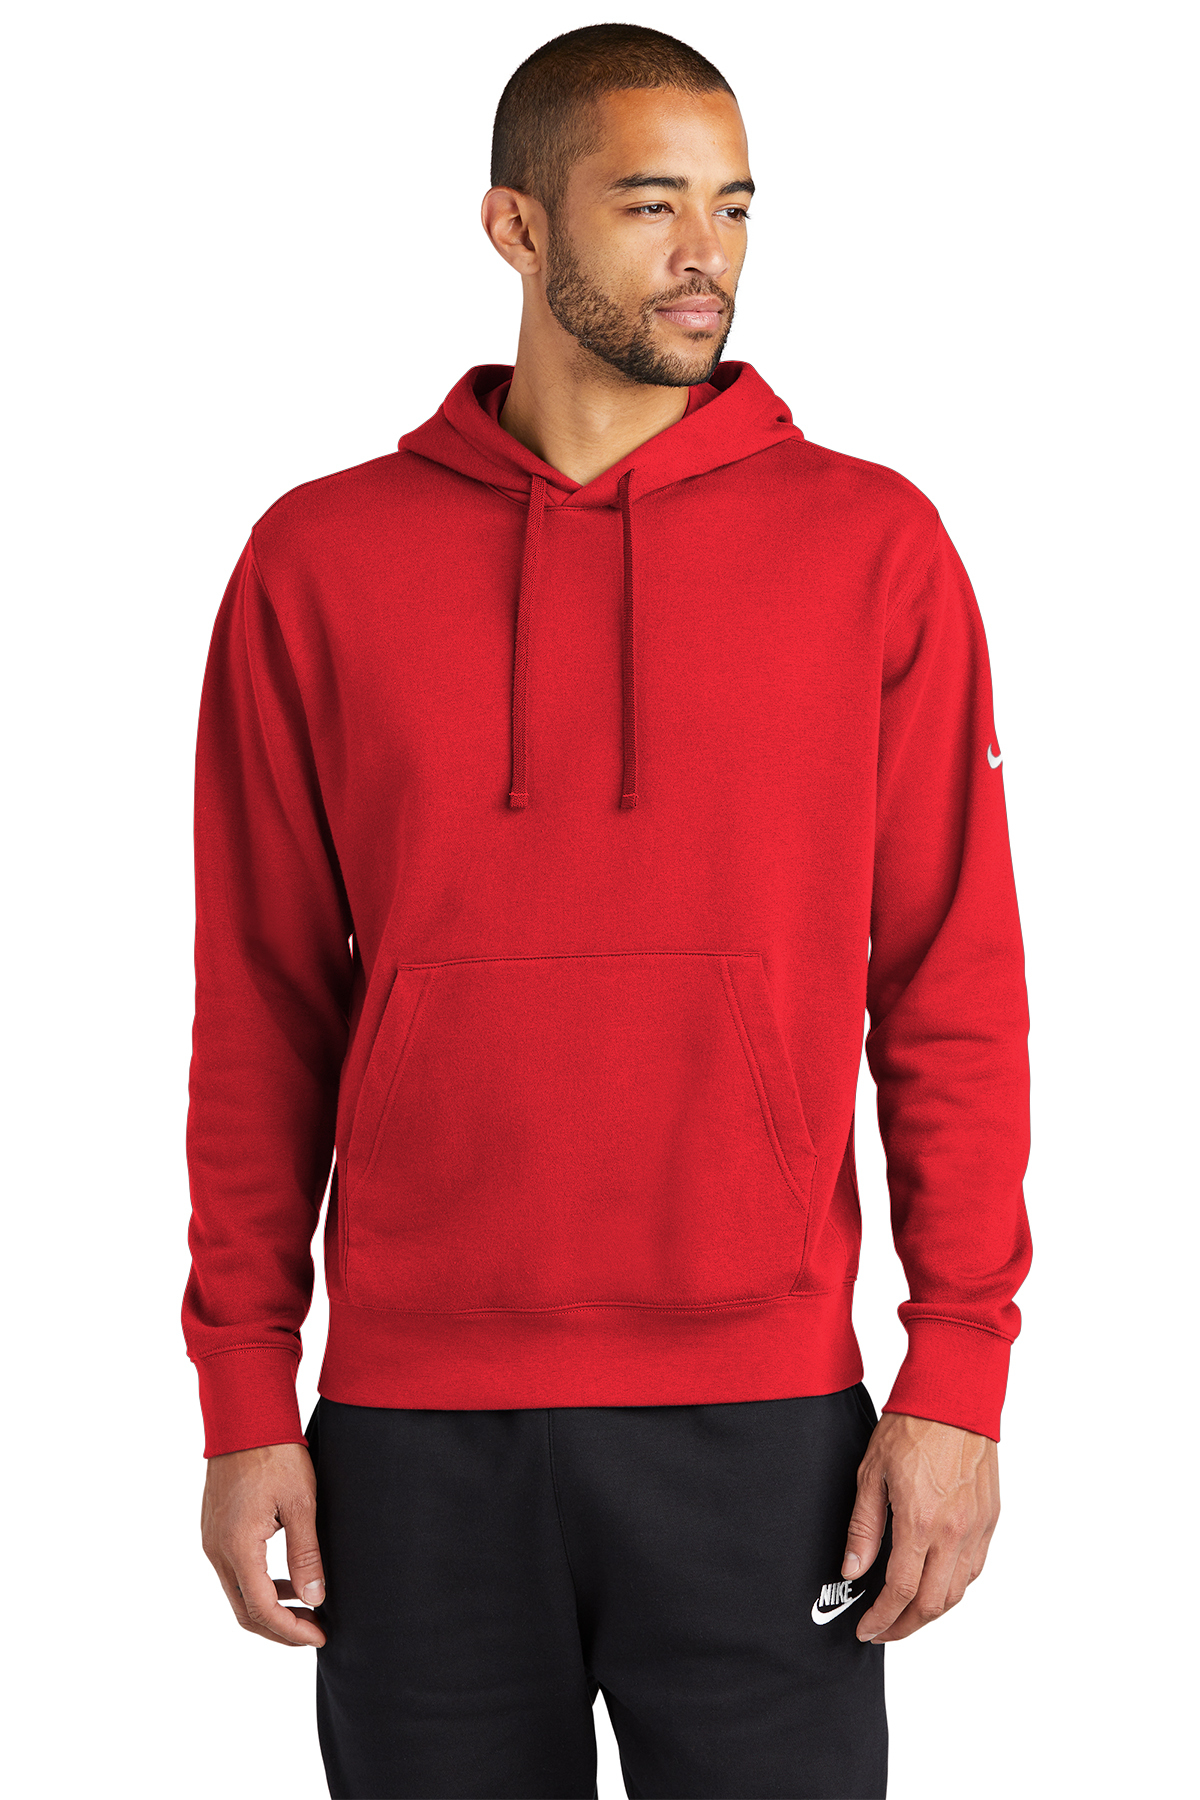 Nike Swoosh Fleece Club Pullover Hoodie SanMar | Product | Sleeve